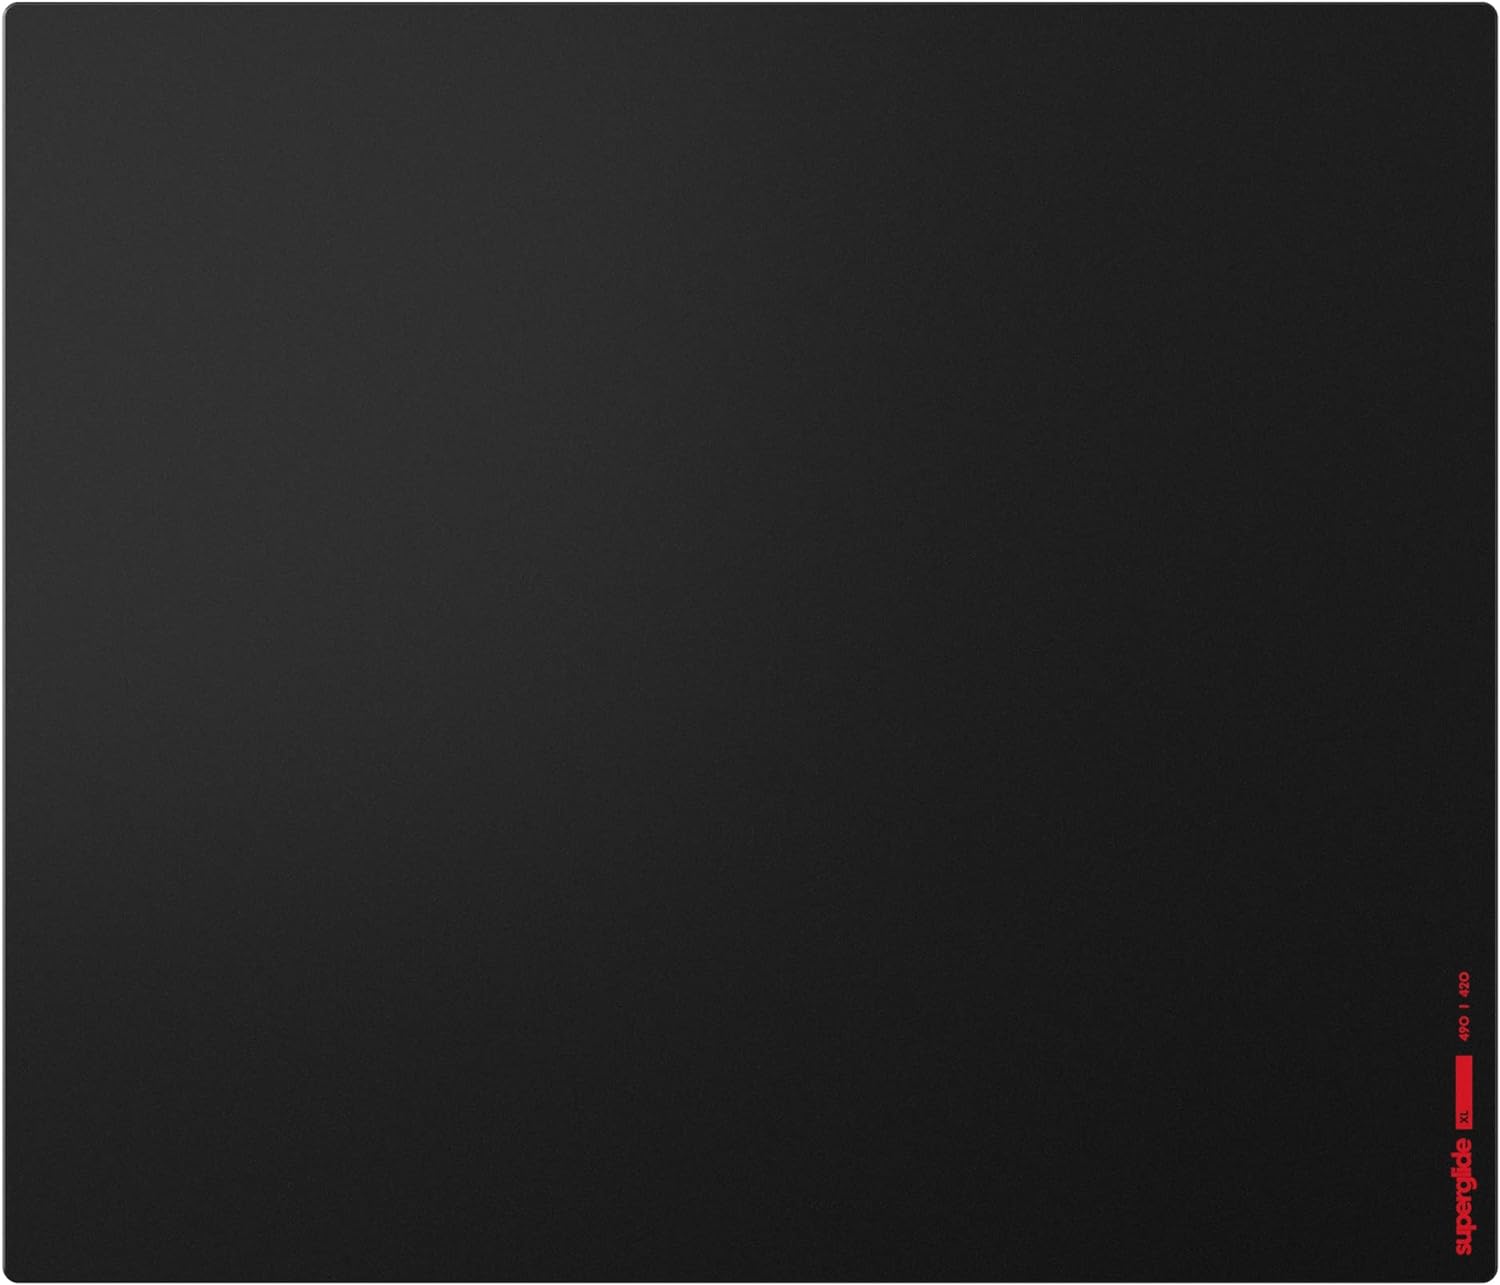 【新品】1週間以内発送 Pulsar Gaming Gears eSports仕様 ゲーミングマウスパッド Superglide PAD ガラスパッド 滑り止め 国内正規品 49cm × 42cm (XL, Black)